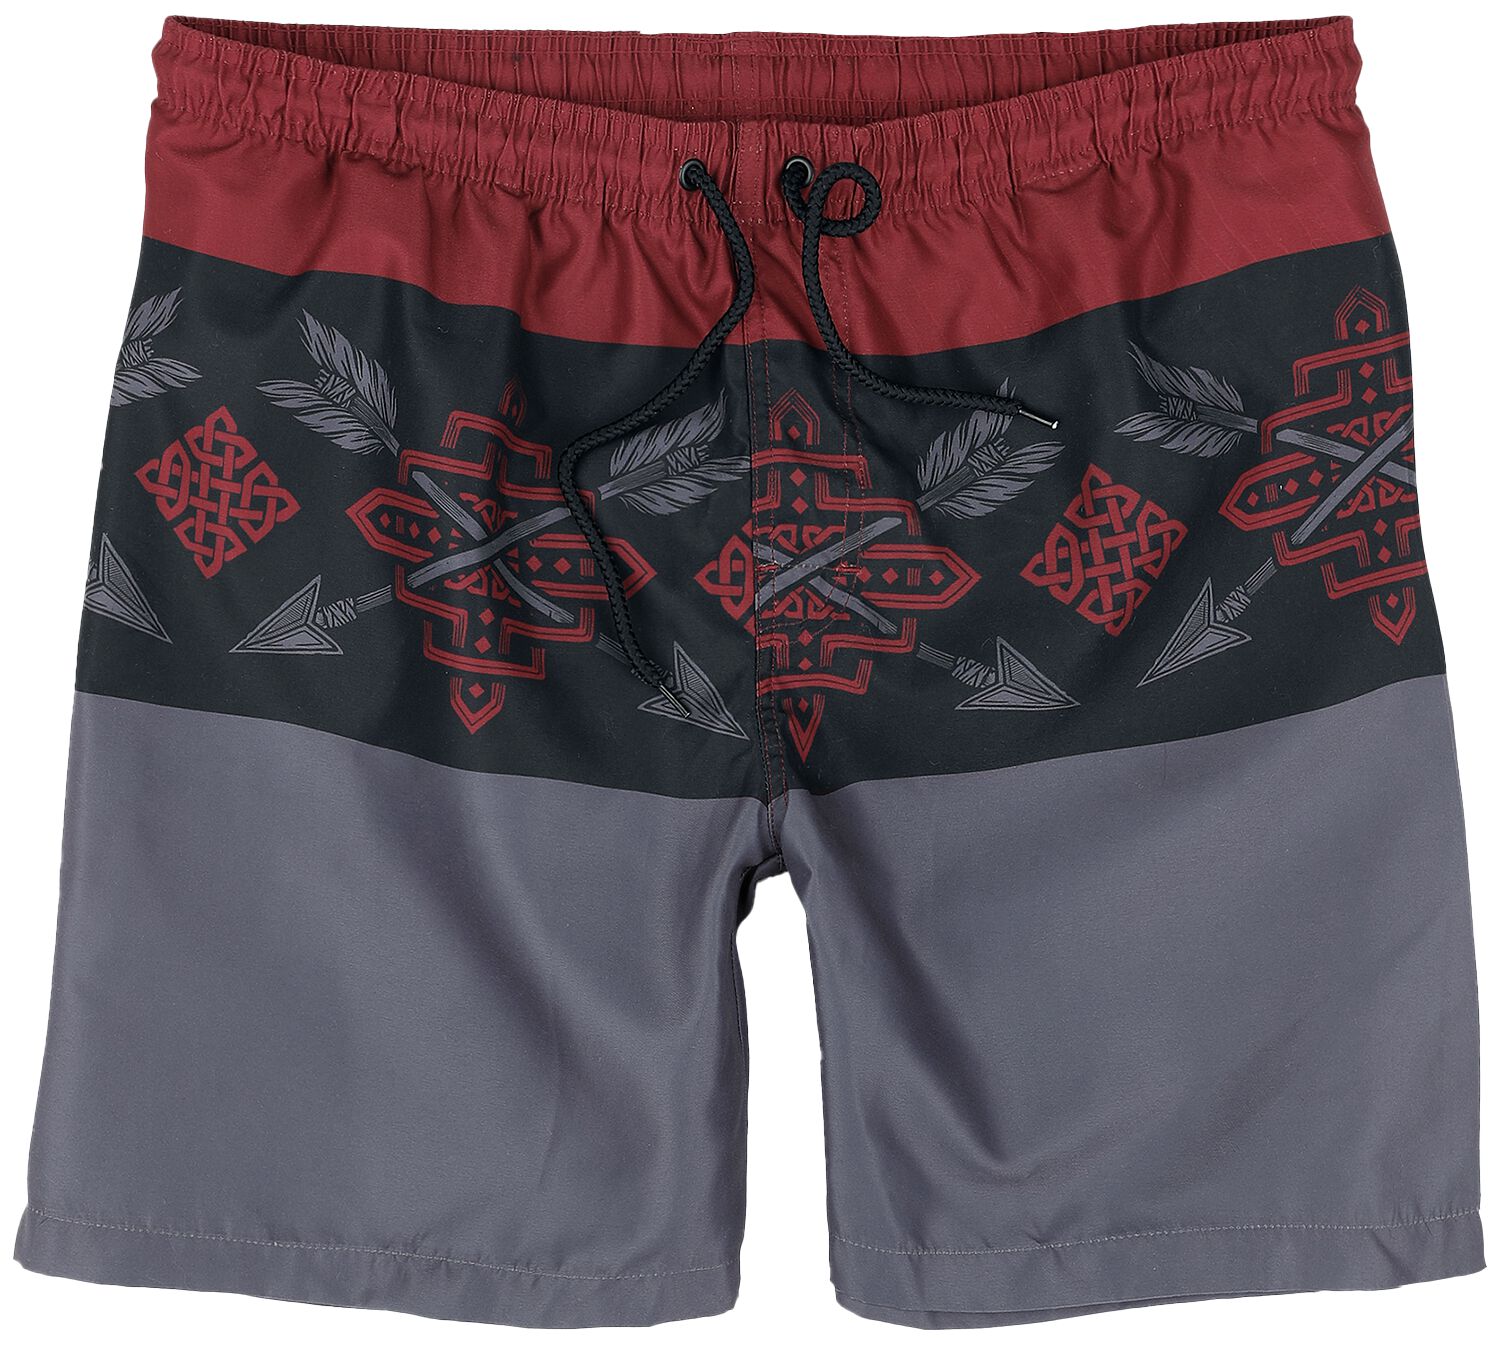 Image of Bermuda di Black Premium by EMP - Tricolor Swim Shorts with Arrow Print - S a XXL - Uomo - rosso/nero